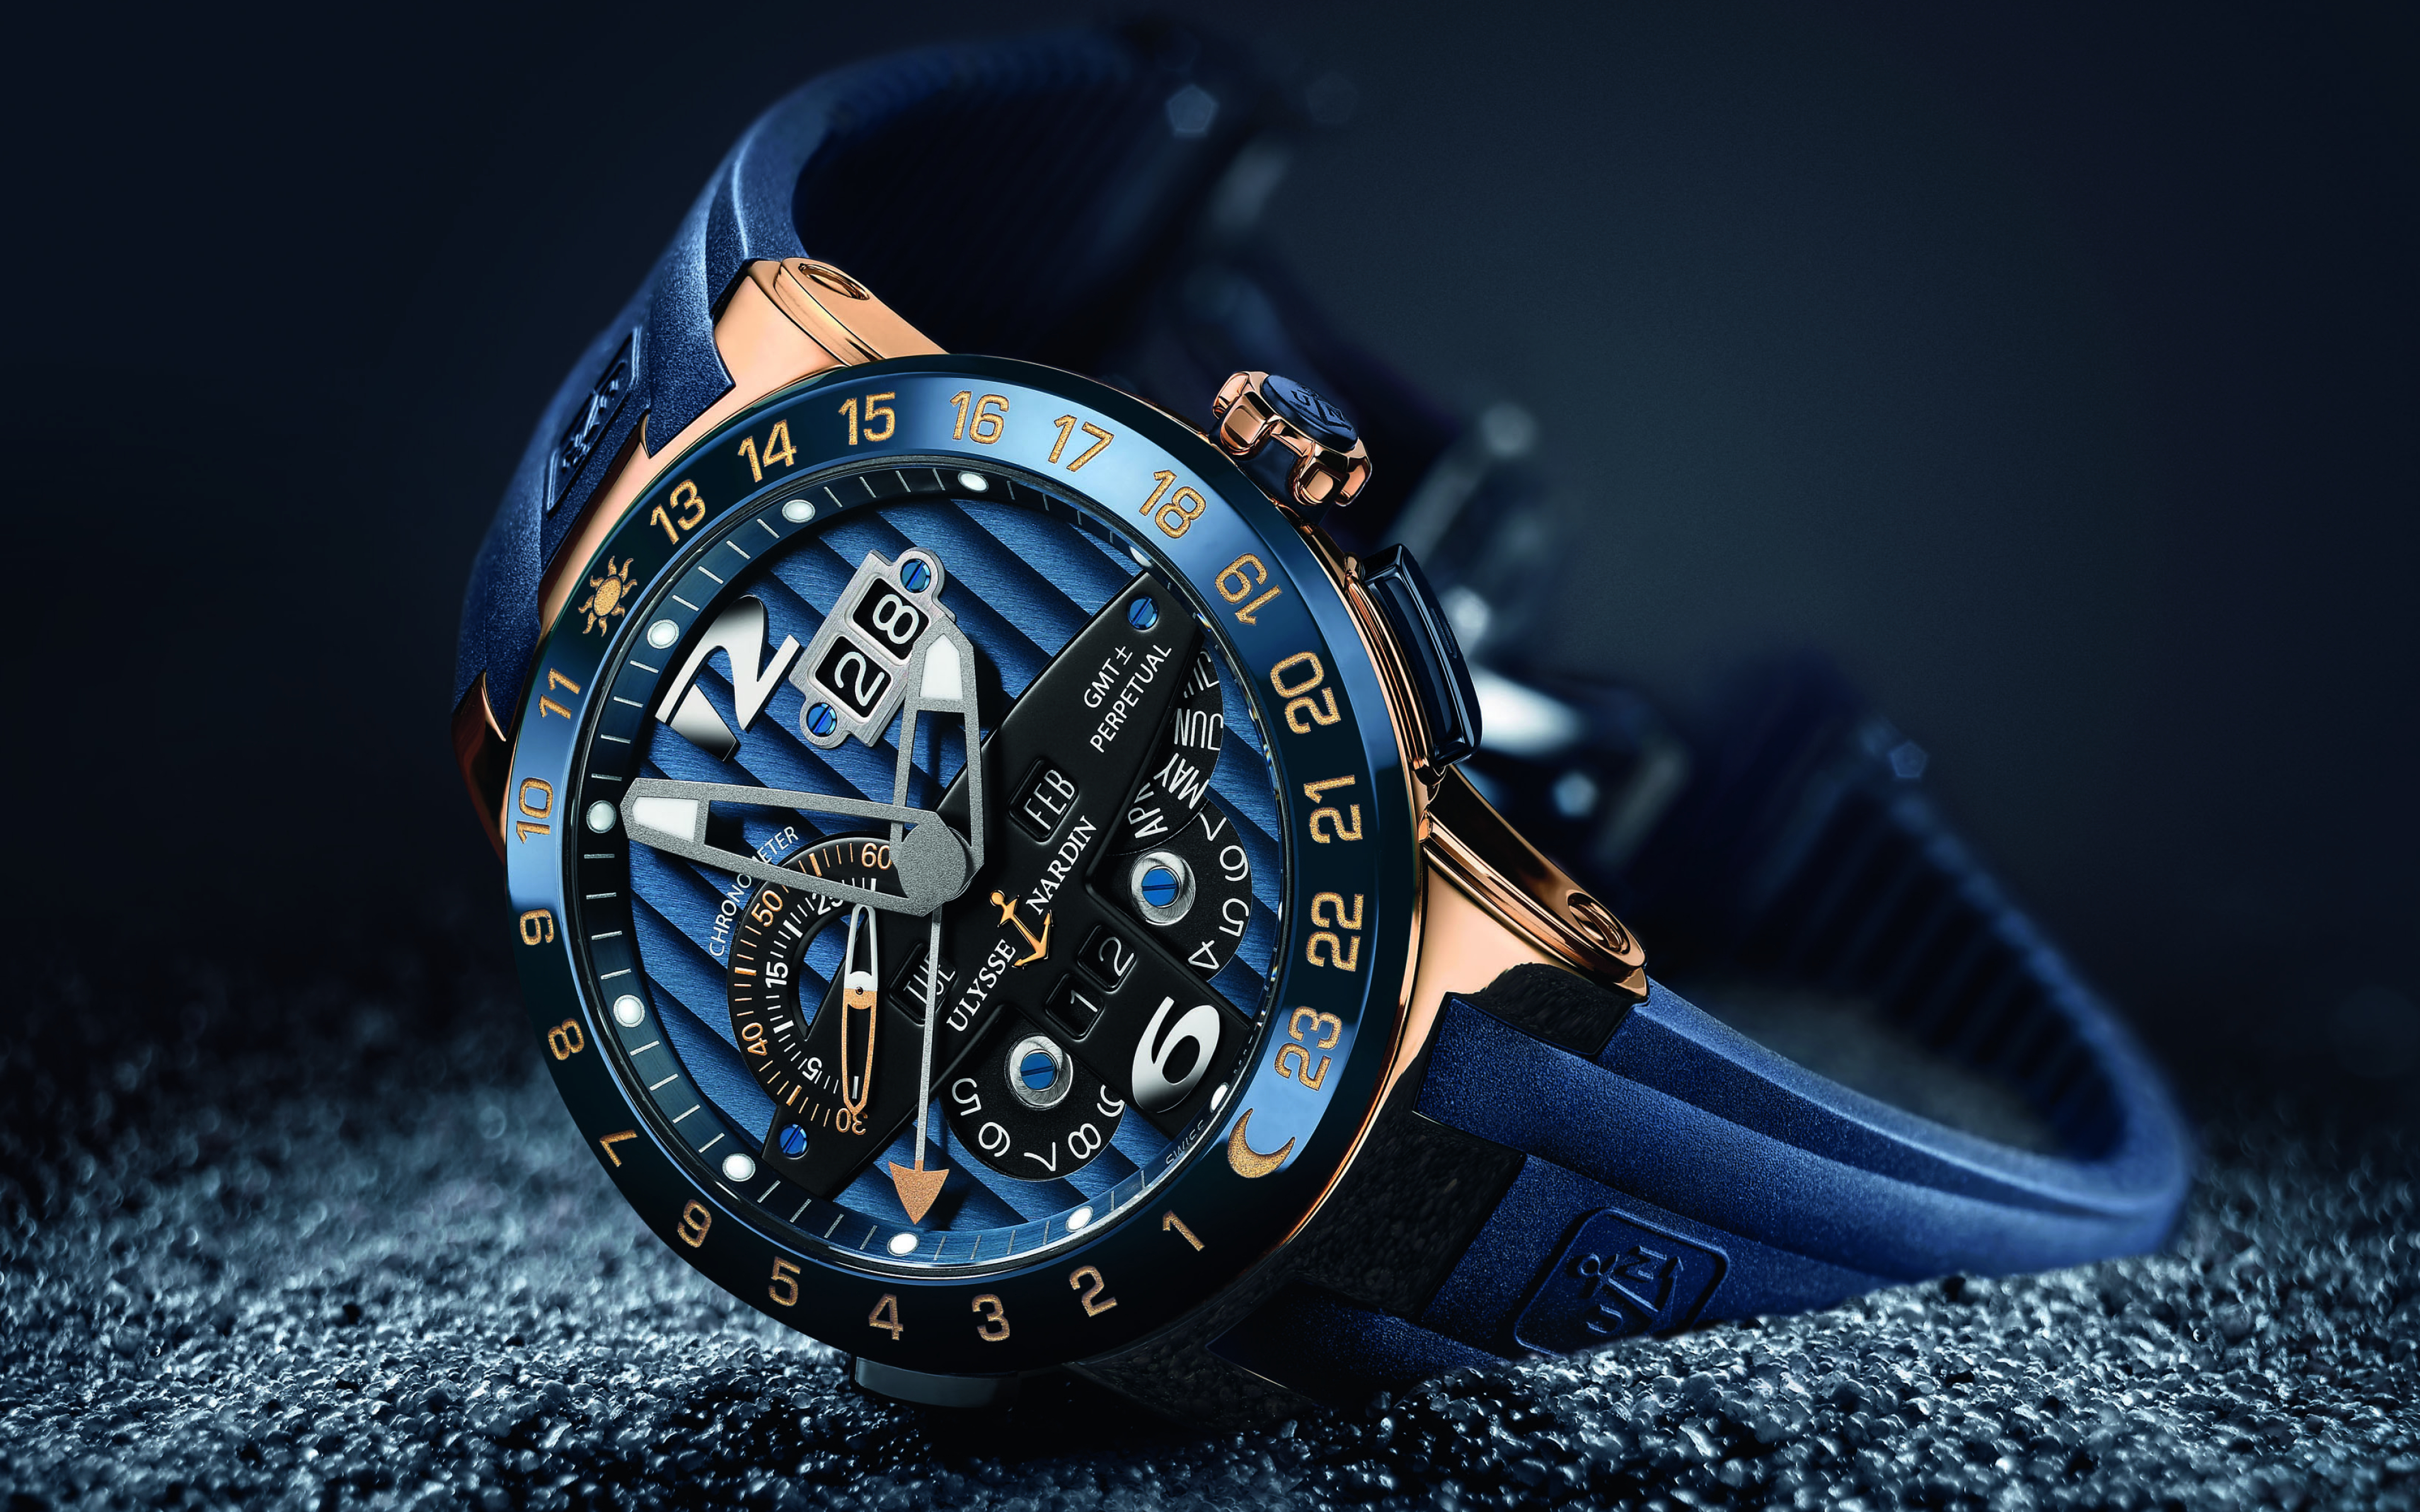 Час сы. Часы Улисс Нордин. Улисс Нордин часы мужские. Швейцарские часы мужские Ulysse Nardin. Часы Луис Нардин синие.